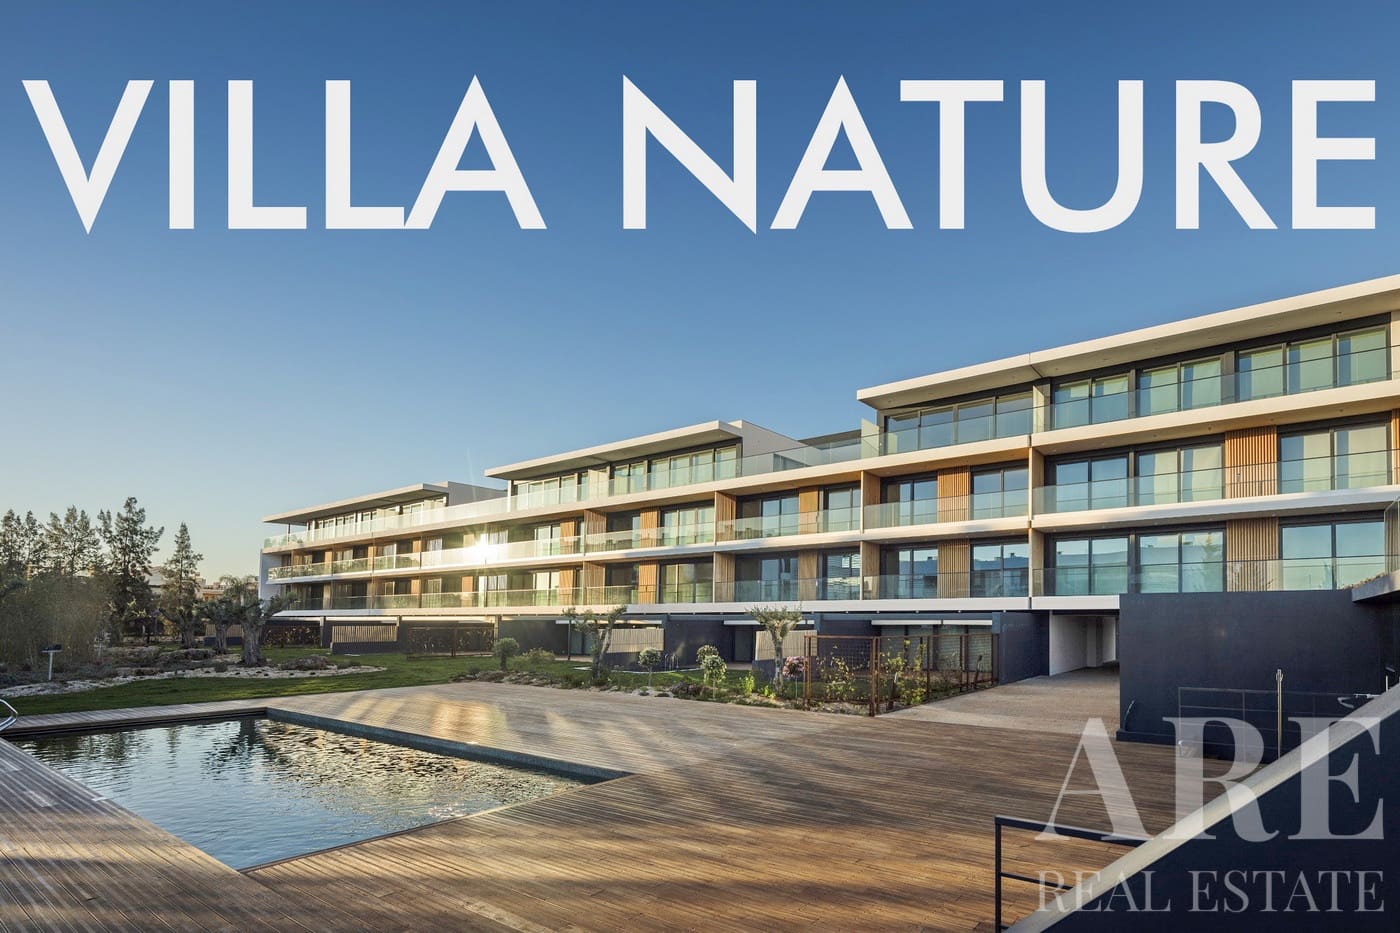 Villa Nature condominium presentation